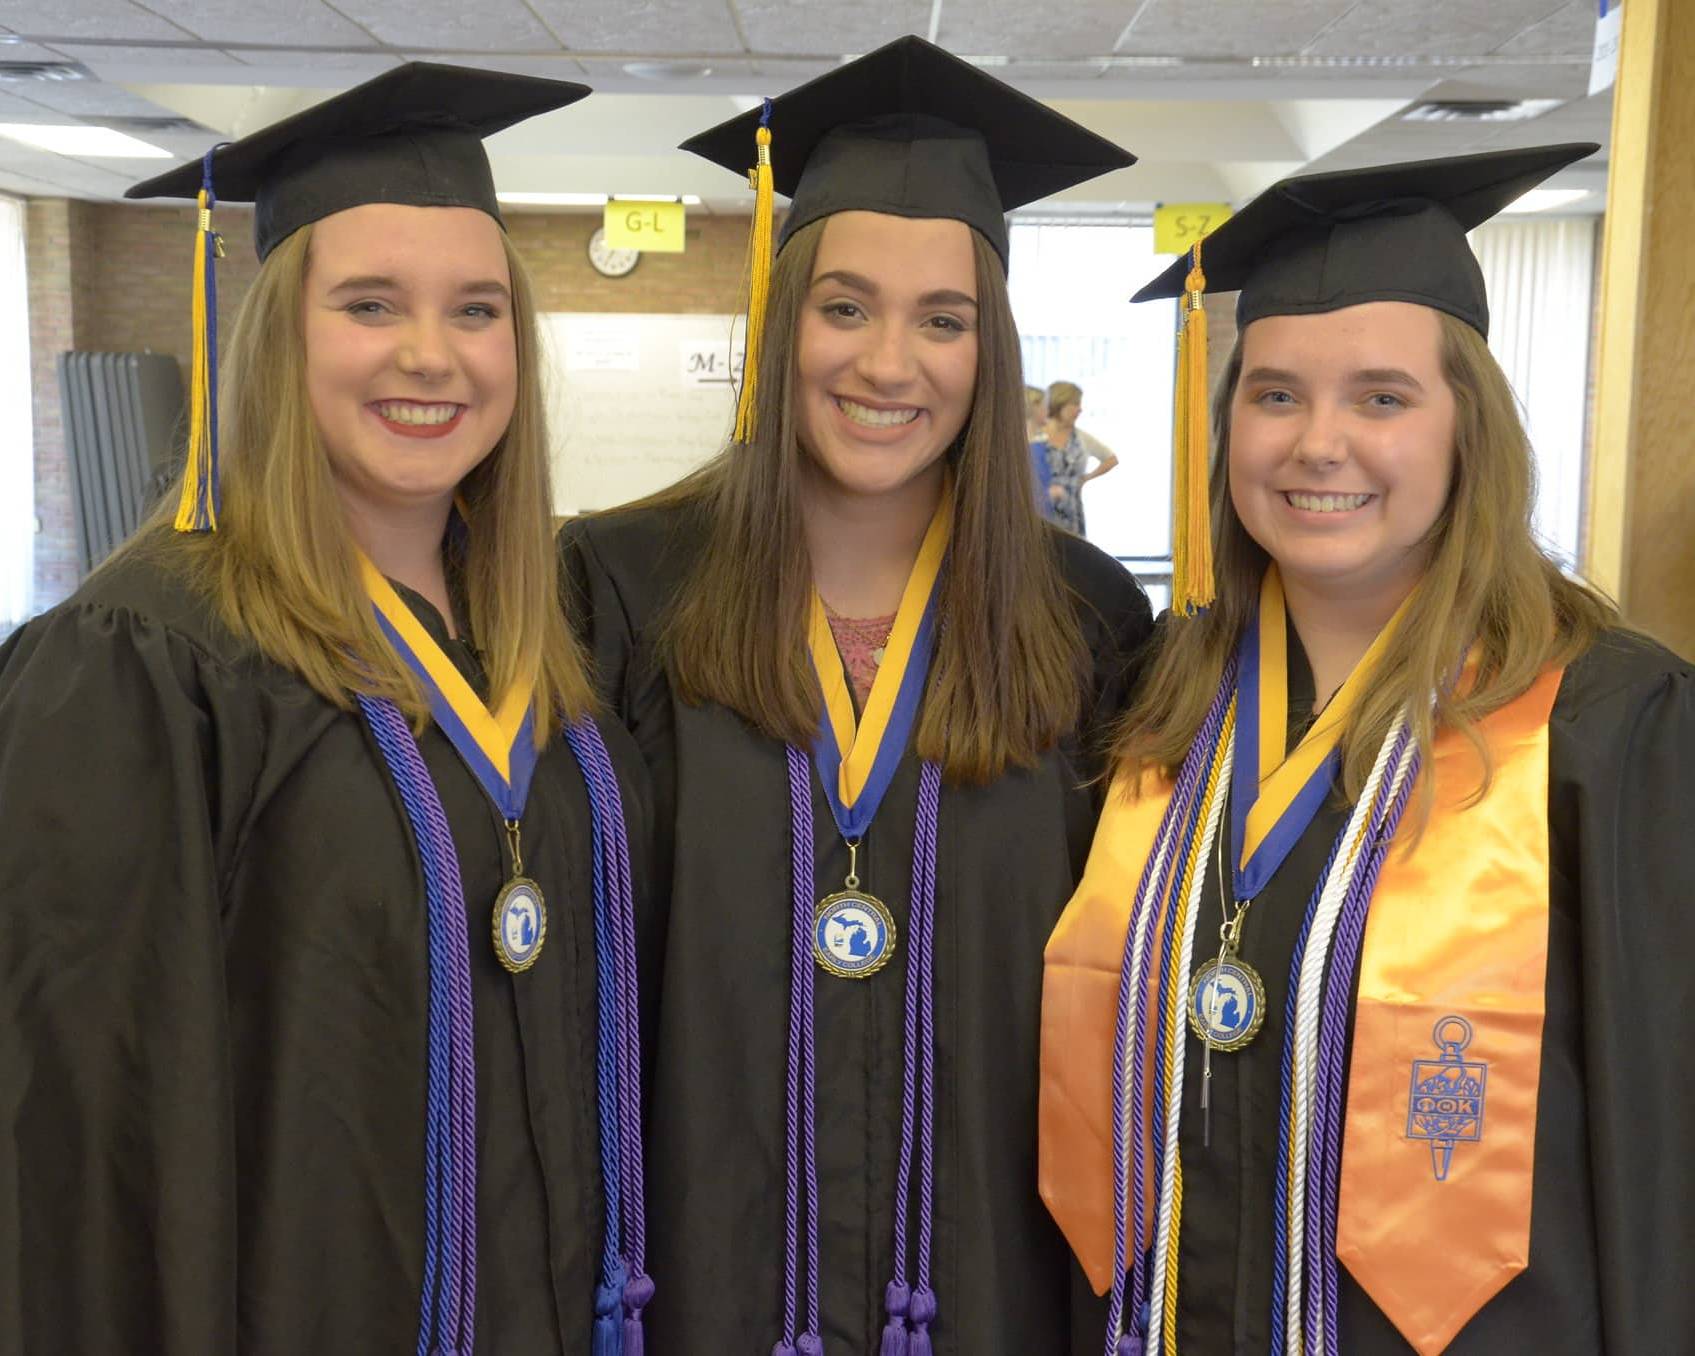 Three graduates, smiling